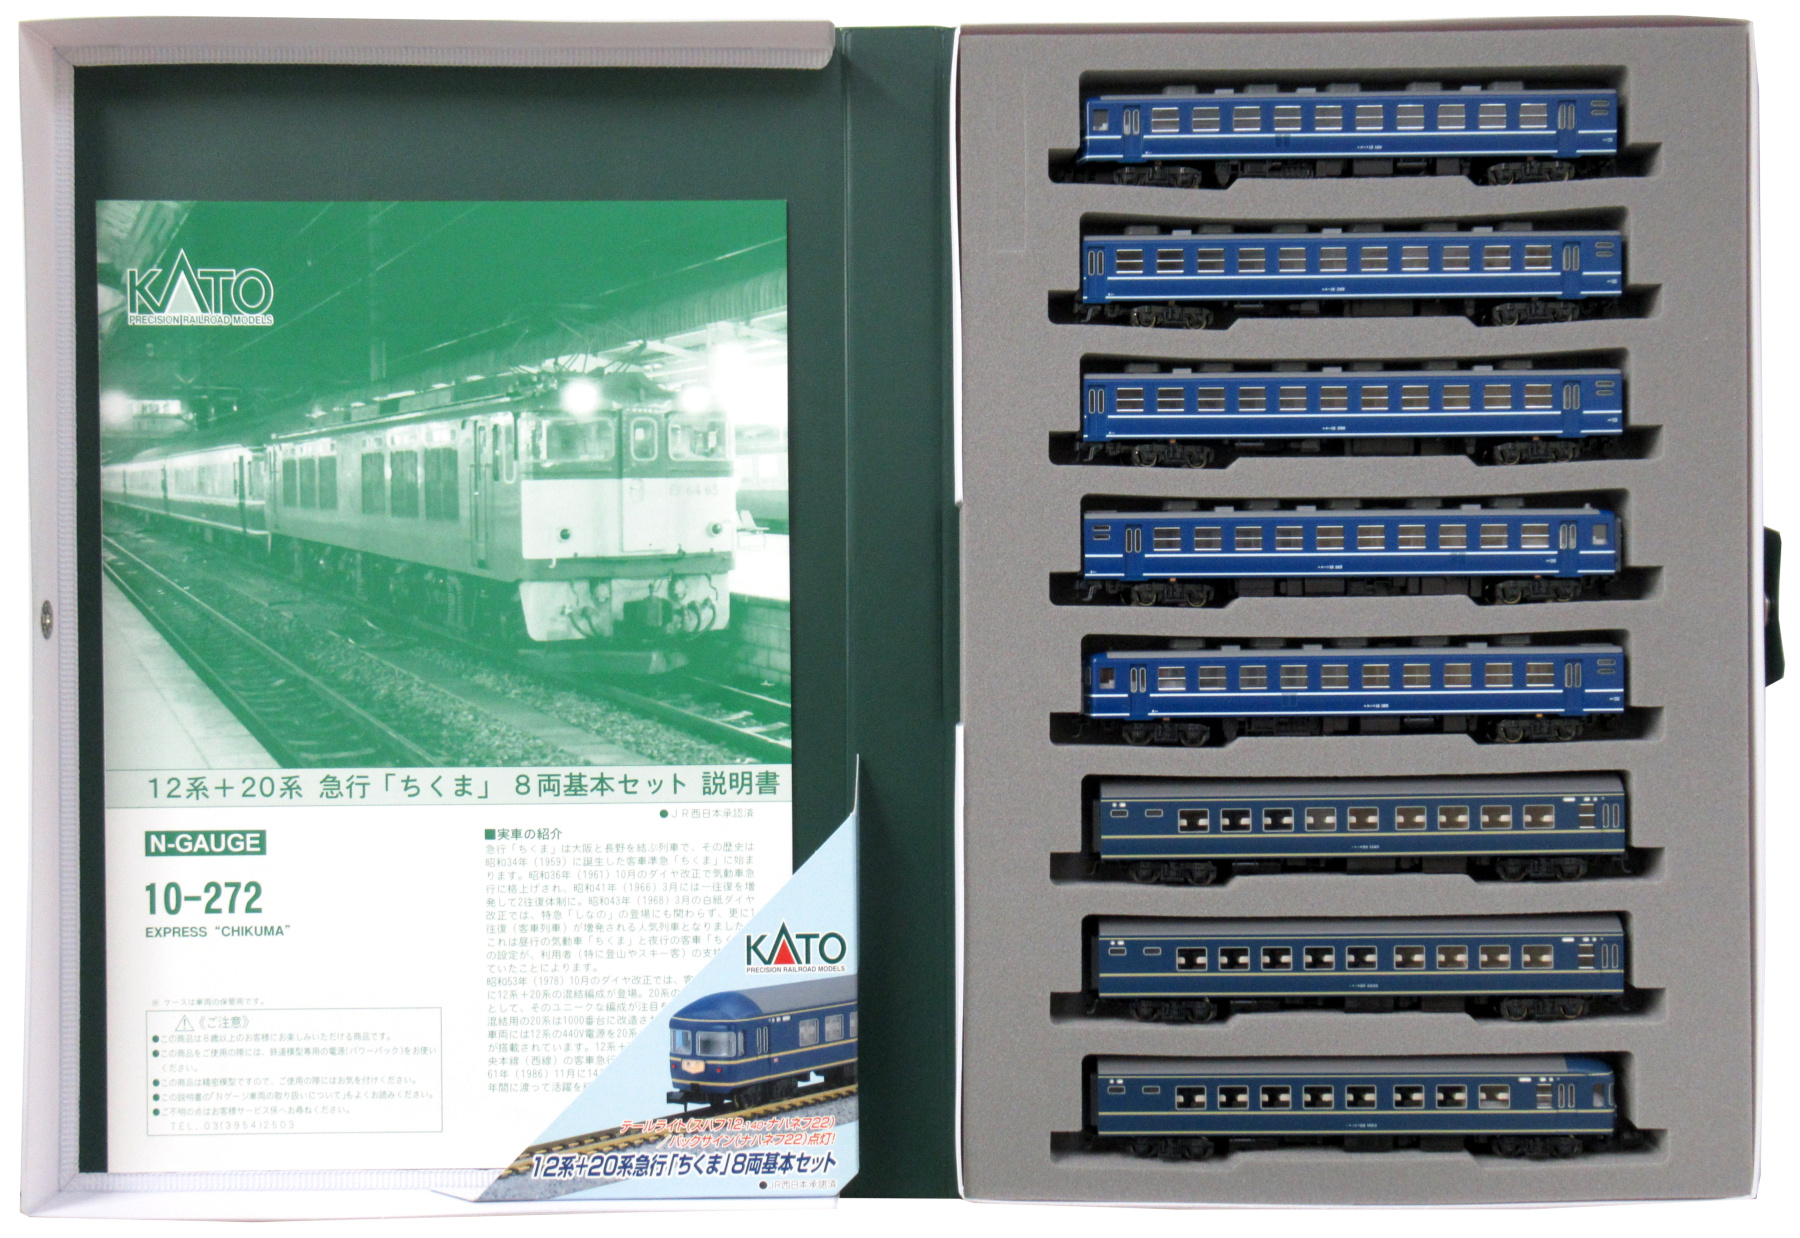 公式]鉄道模型(10-27212系+20系 急行「ちくま」8両基本セット)商品詳細